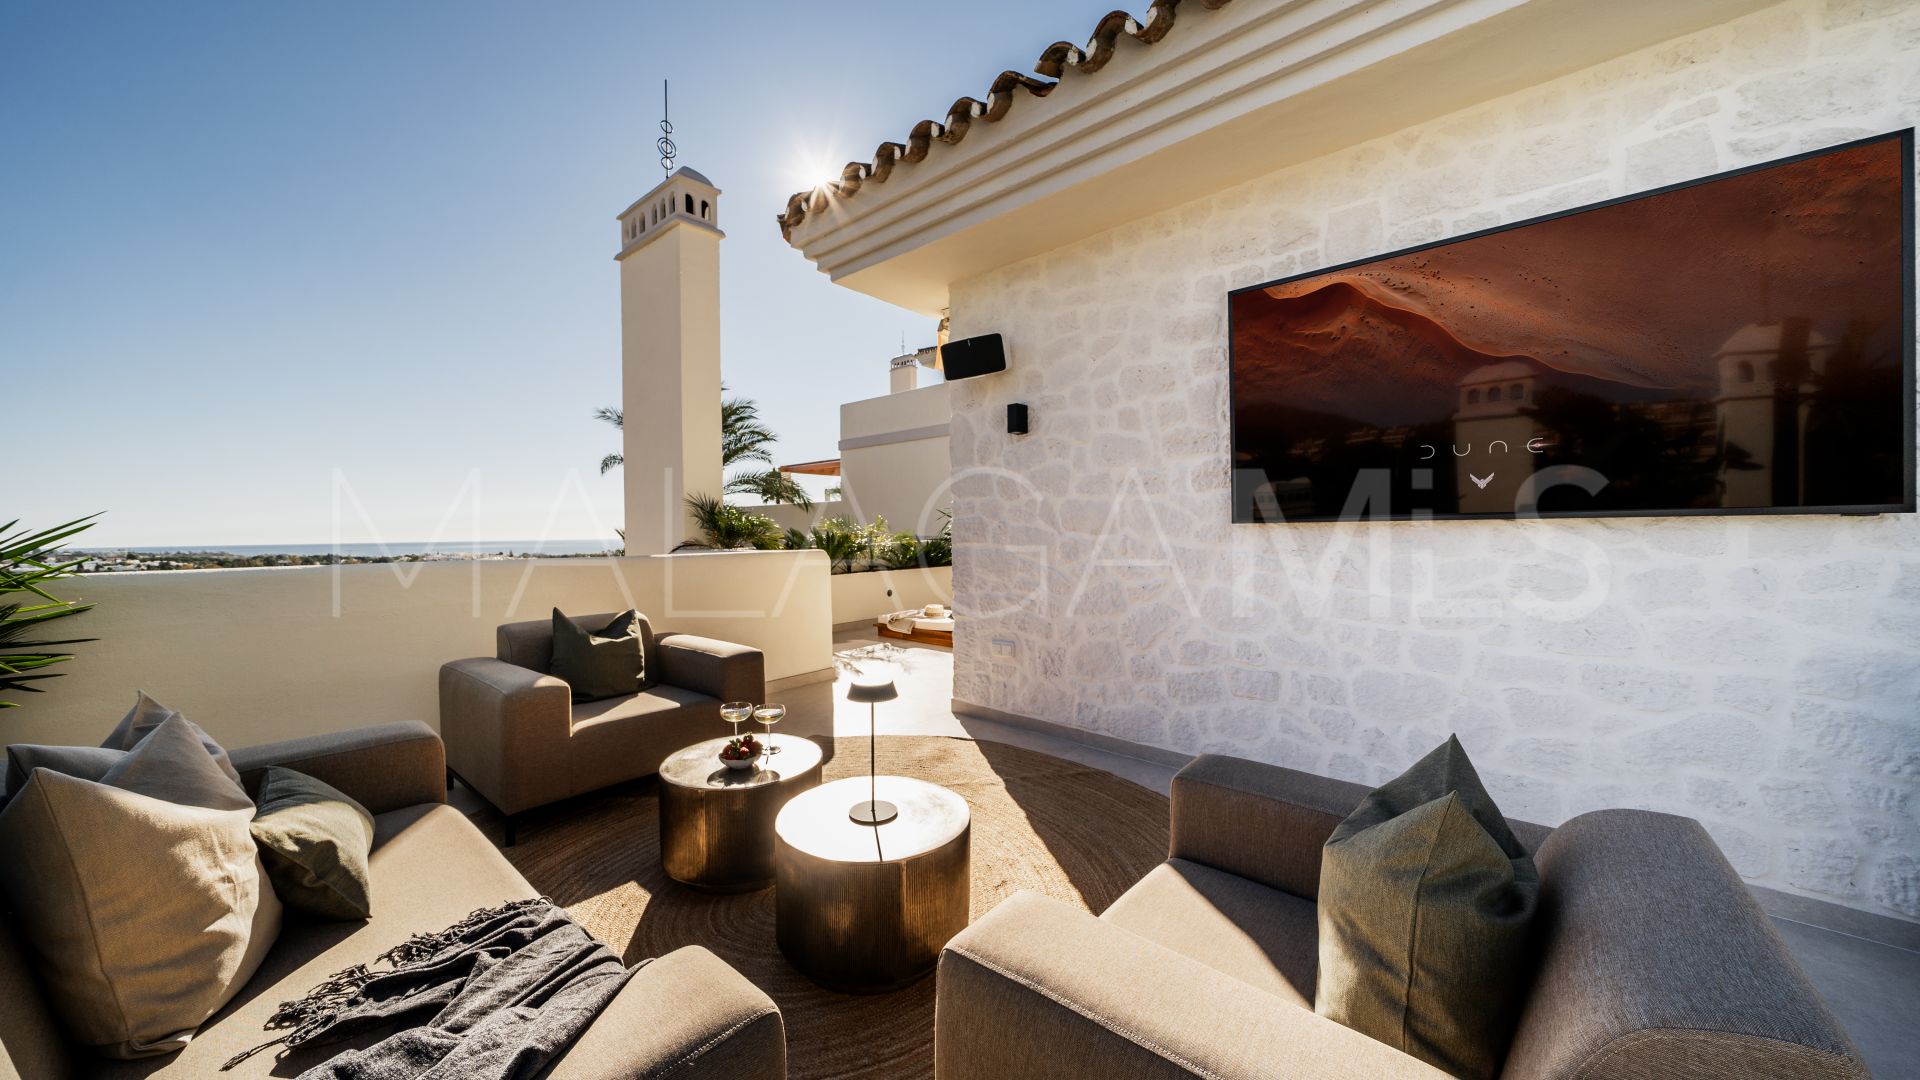 Se vende atico duplex with 3 bedrooms in Palacetes Los Belvederes